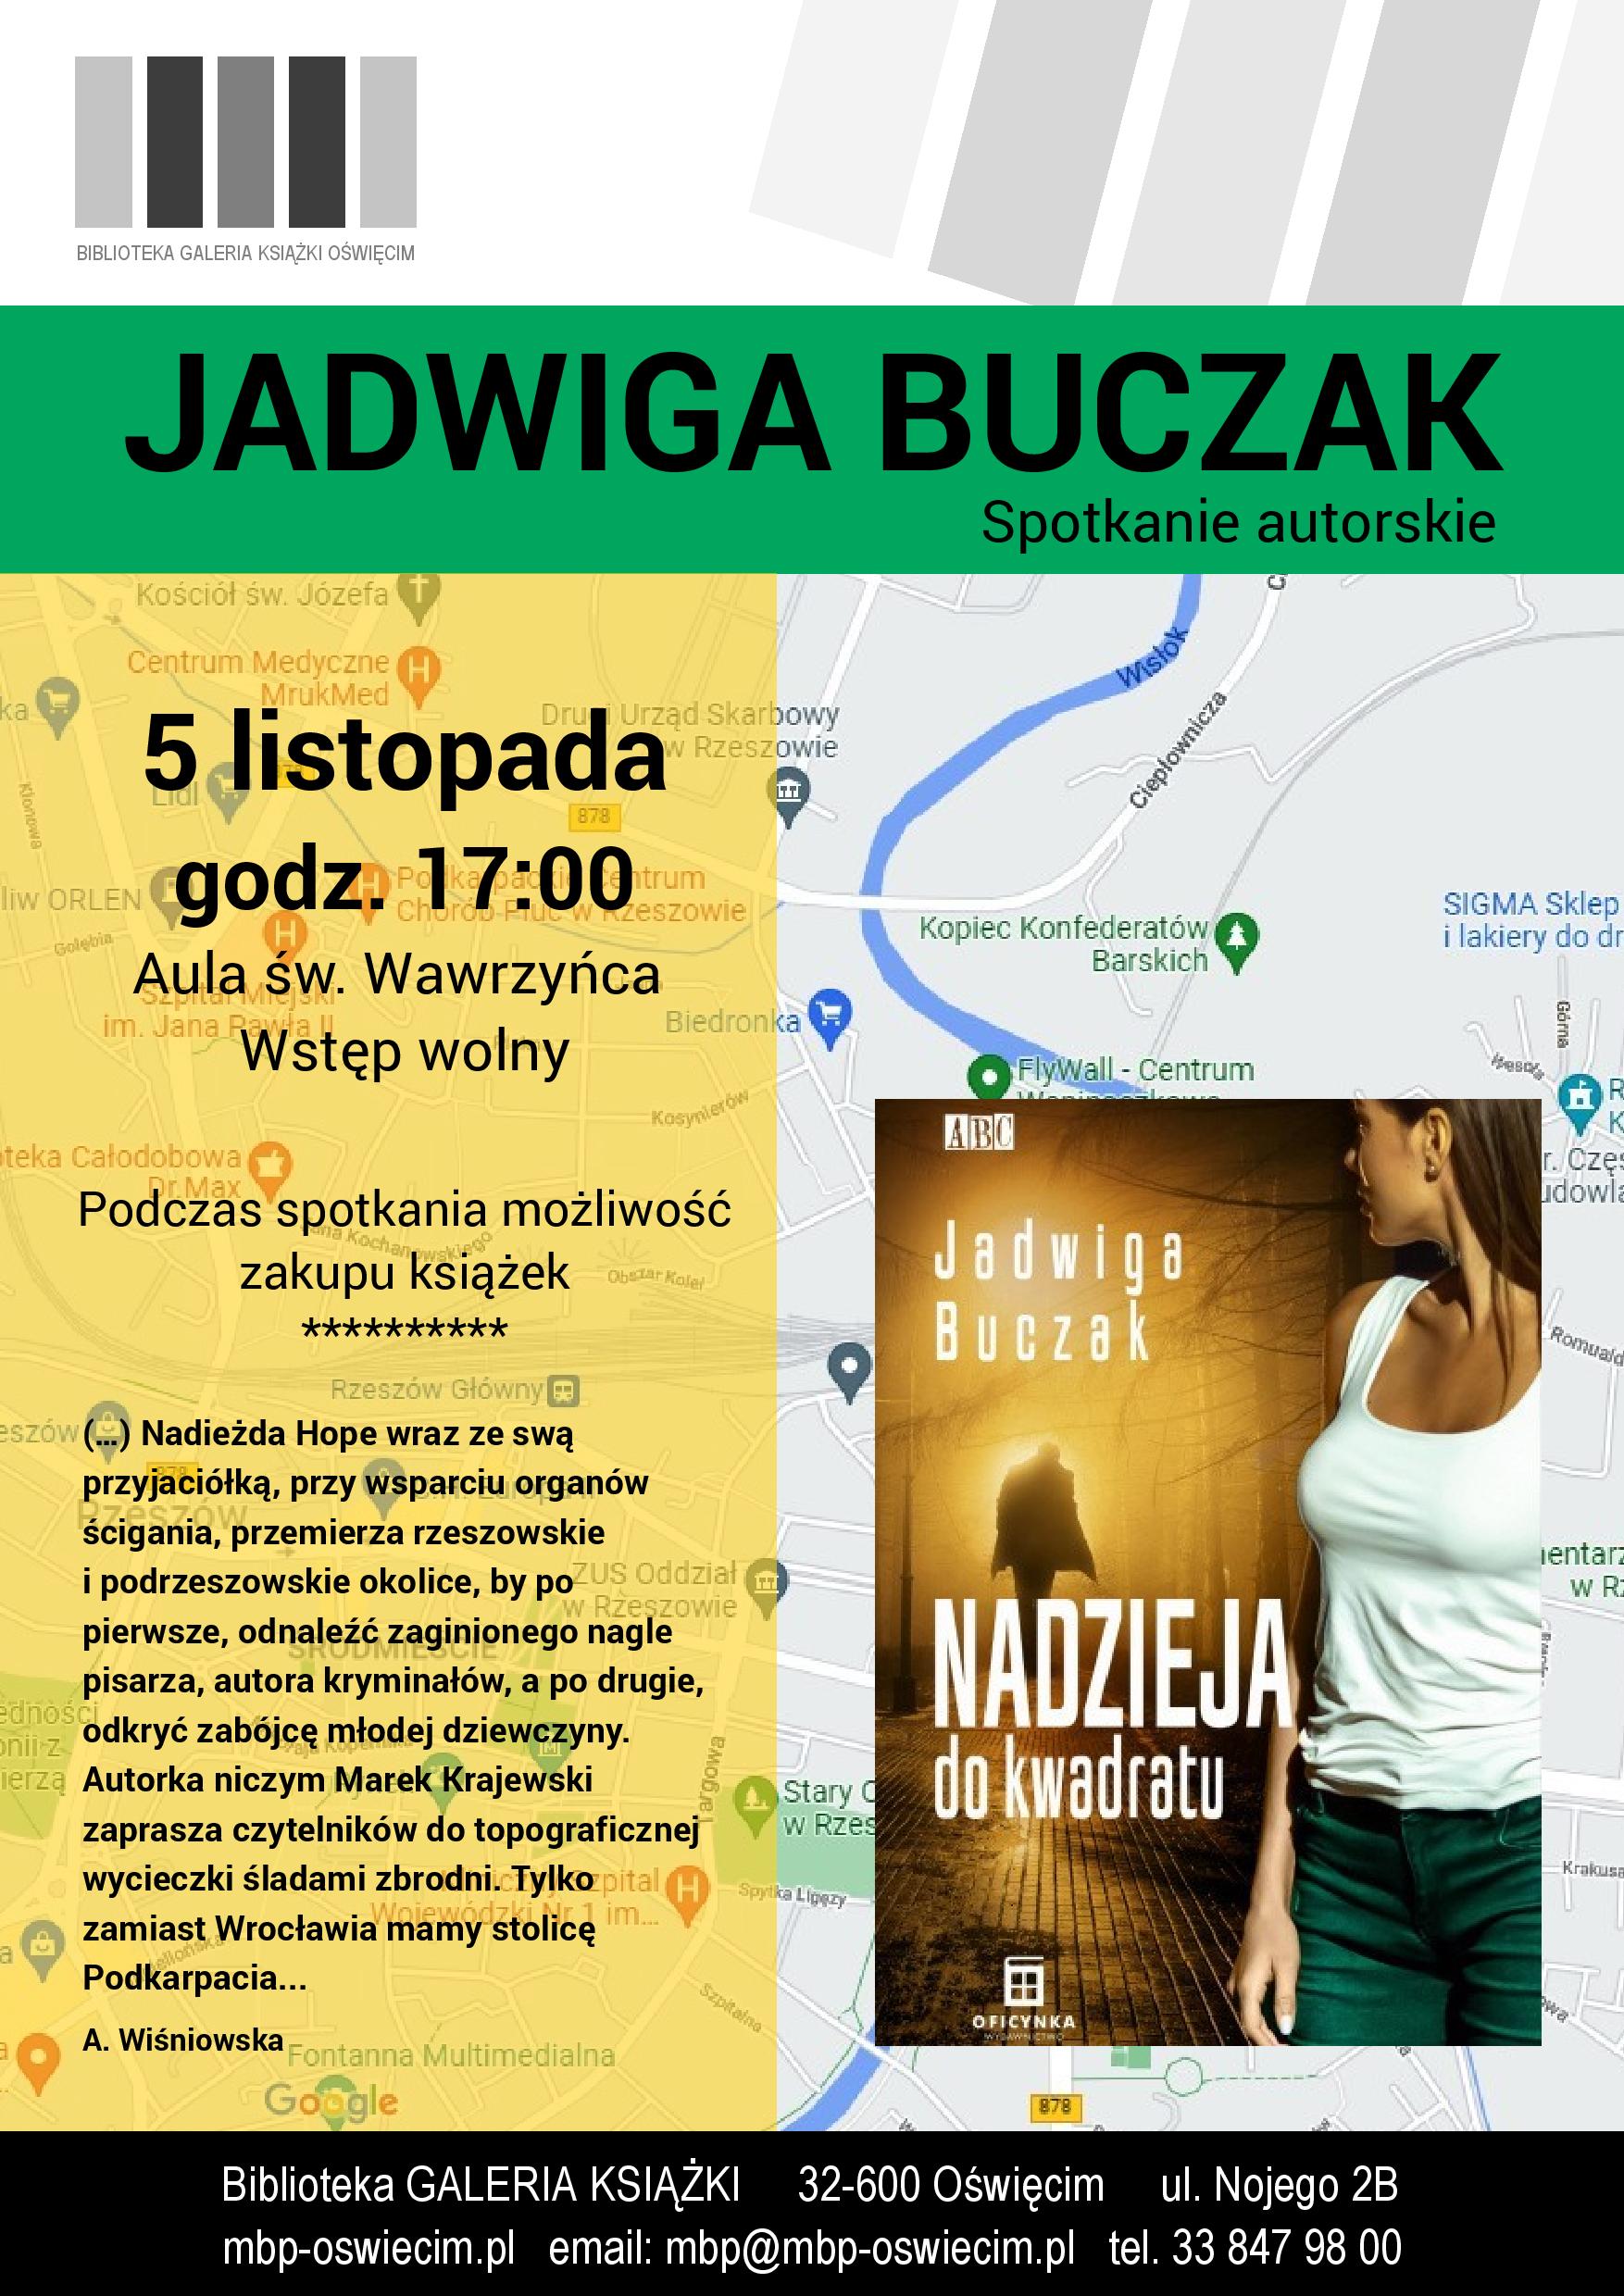 Spotkanie autorskie z Jadwigą Buczak w oświęcimskiej Bibliotece.